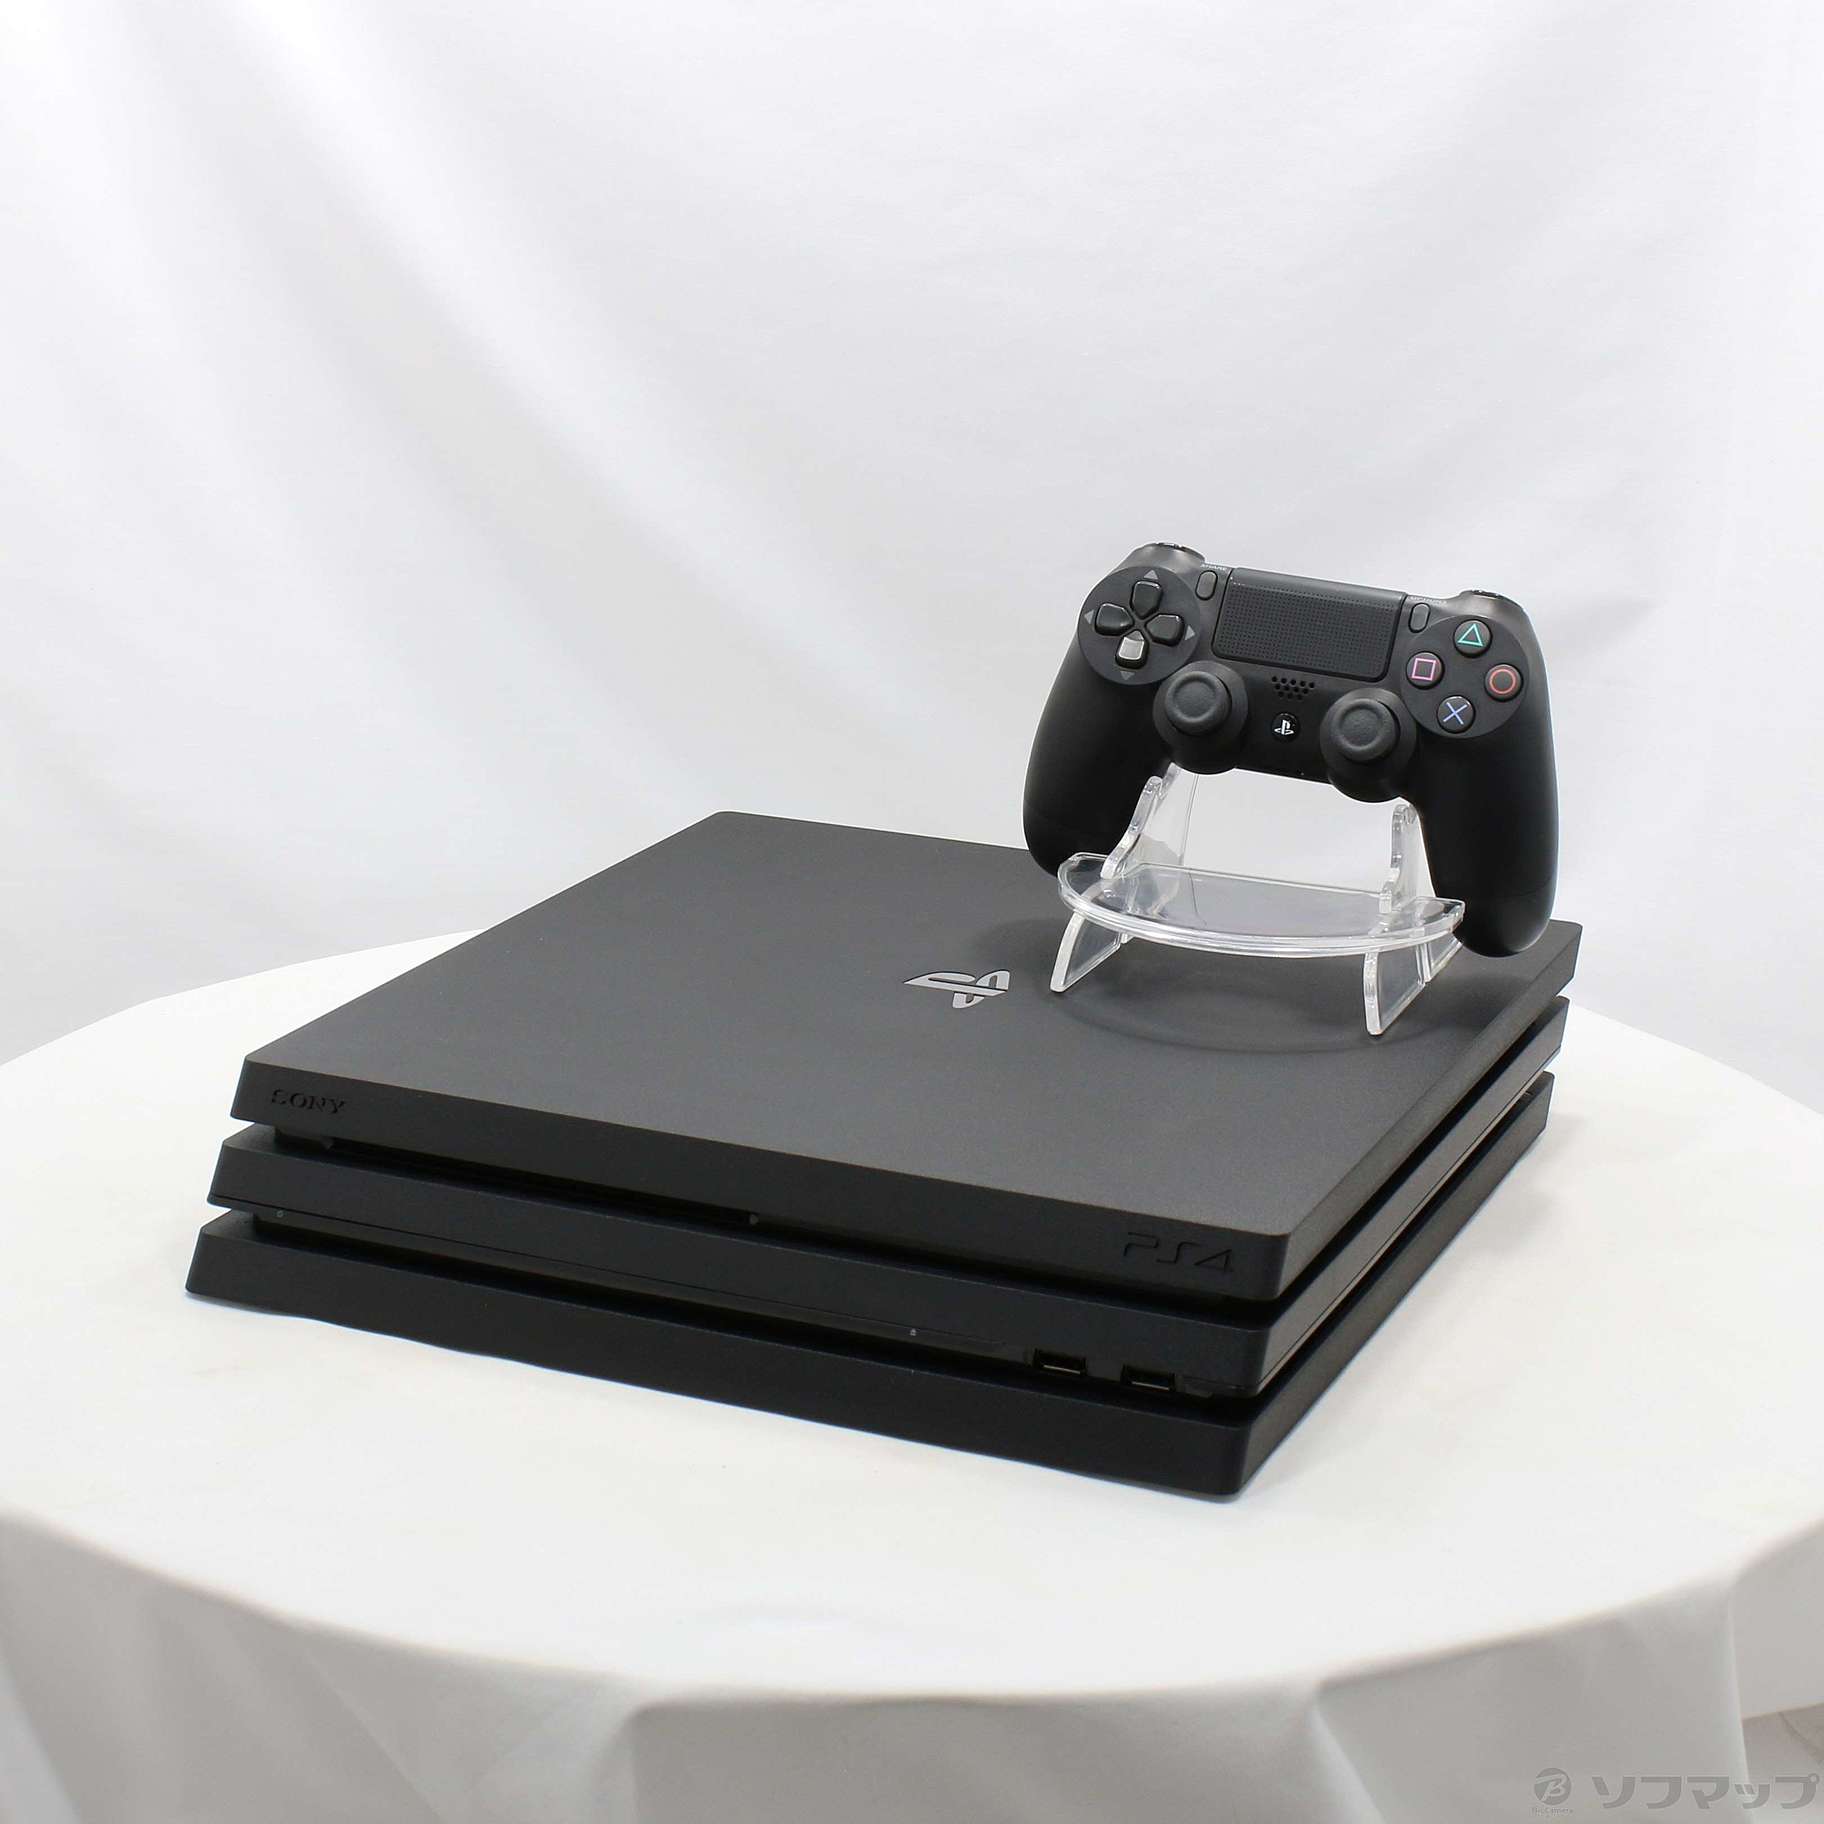 PlayStation Pro ジェット・ブラック 2TB (CUH-7200CB01) - 4